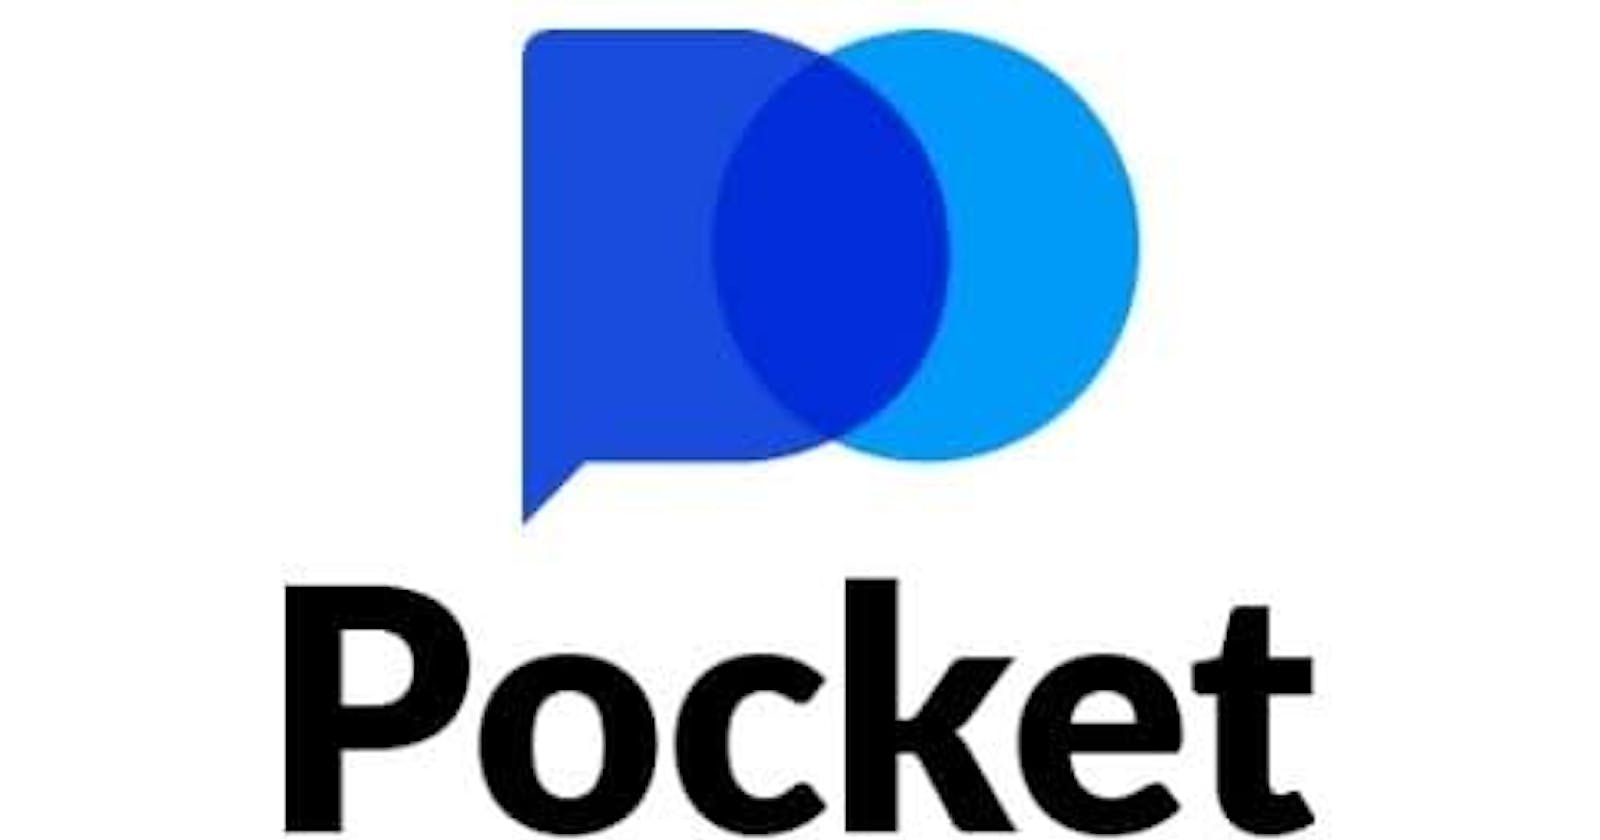 Pocket Option Forex Broker Review